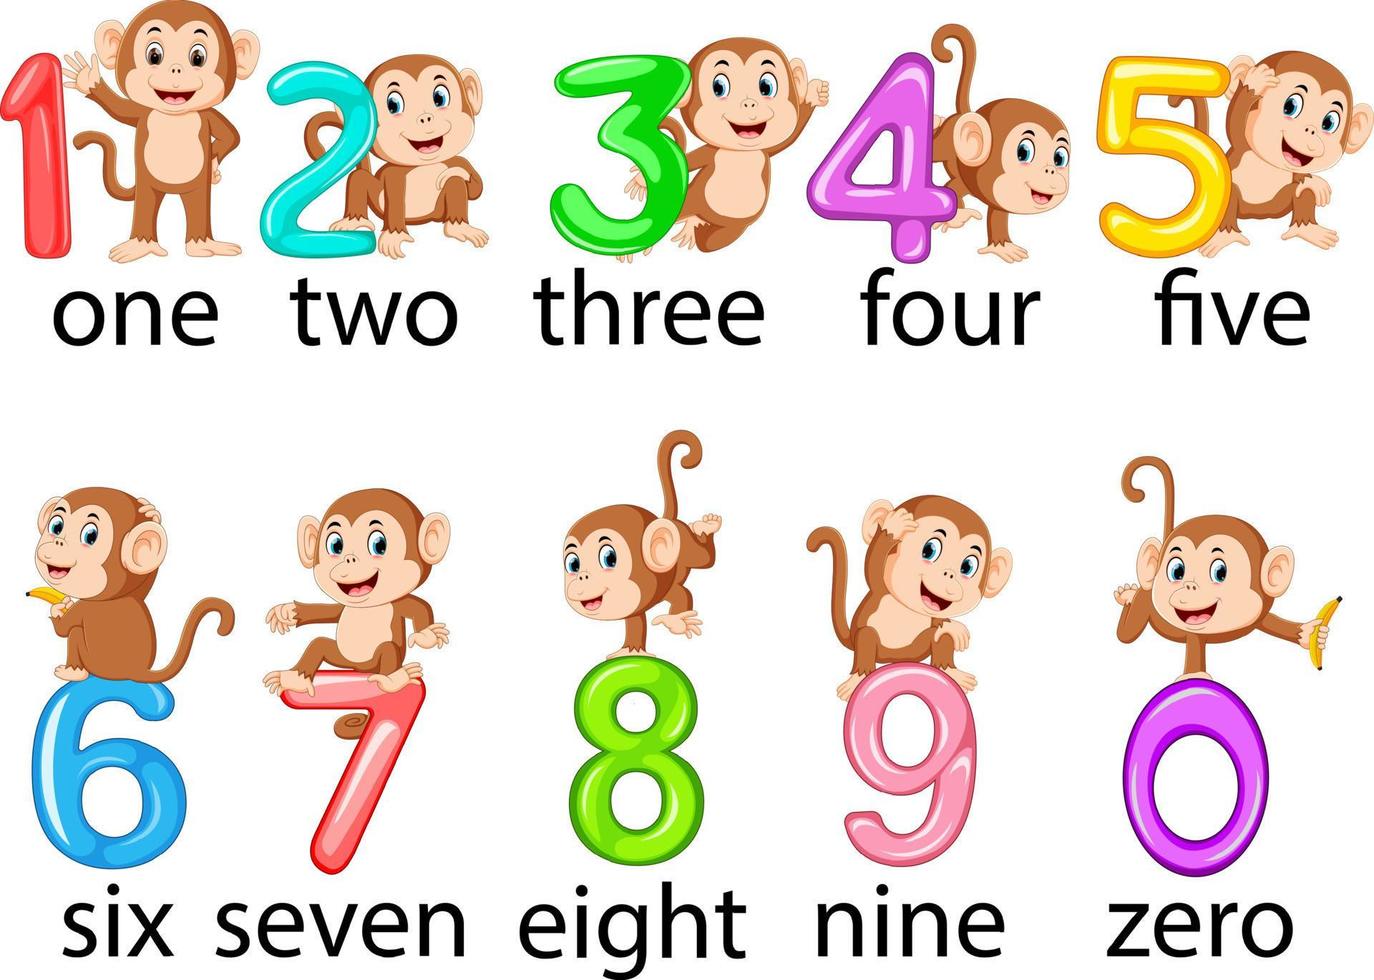 die Sammlung der Nummer mit dem Affen daneben mit den unterschiedlichen Posen vektor